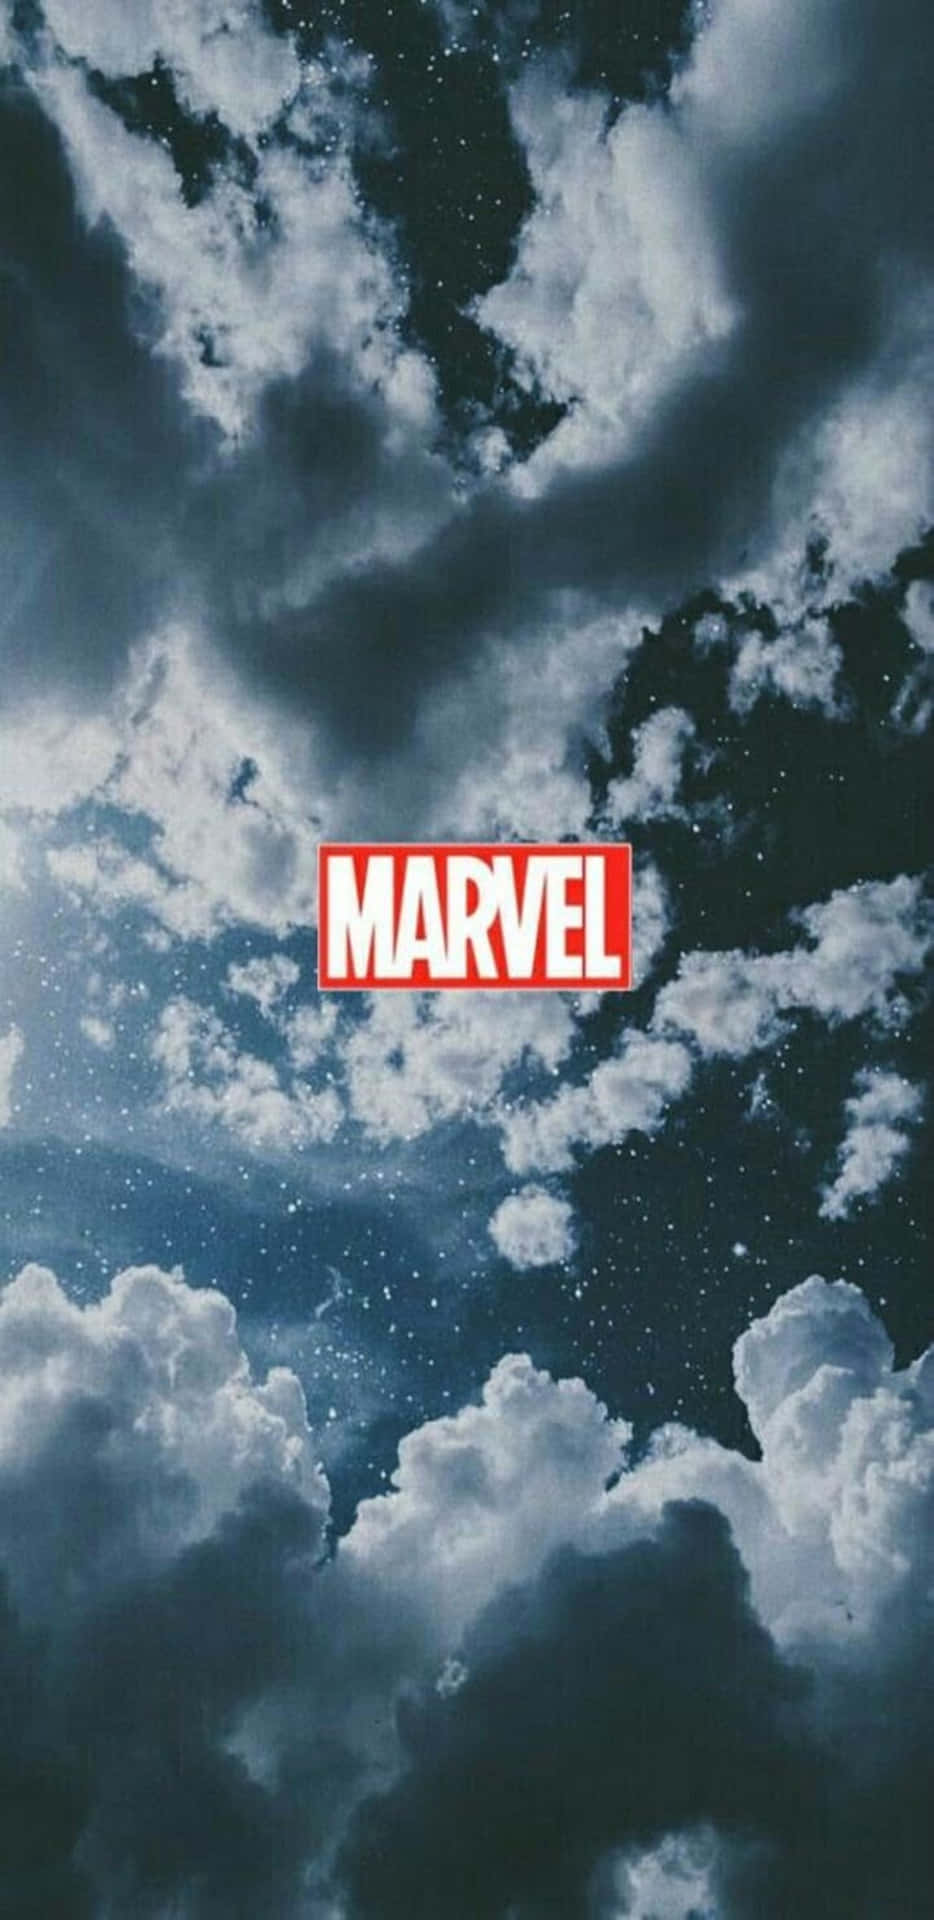 Pixel3xl Hintergrund Mit Marvel-logo In Den Wolken